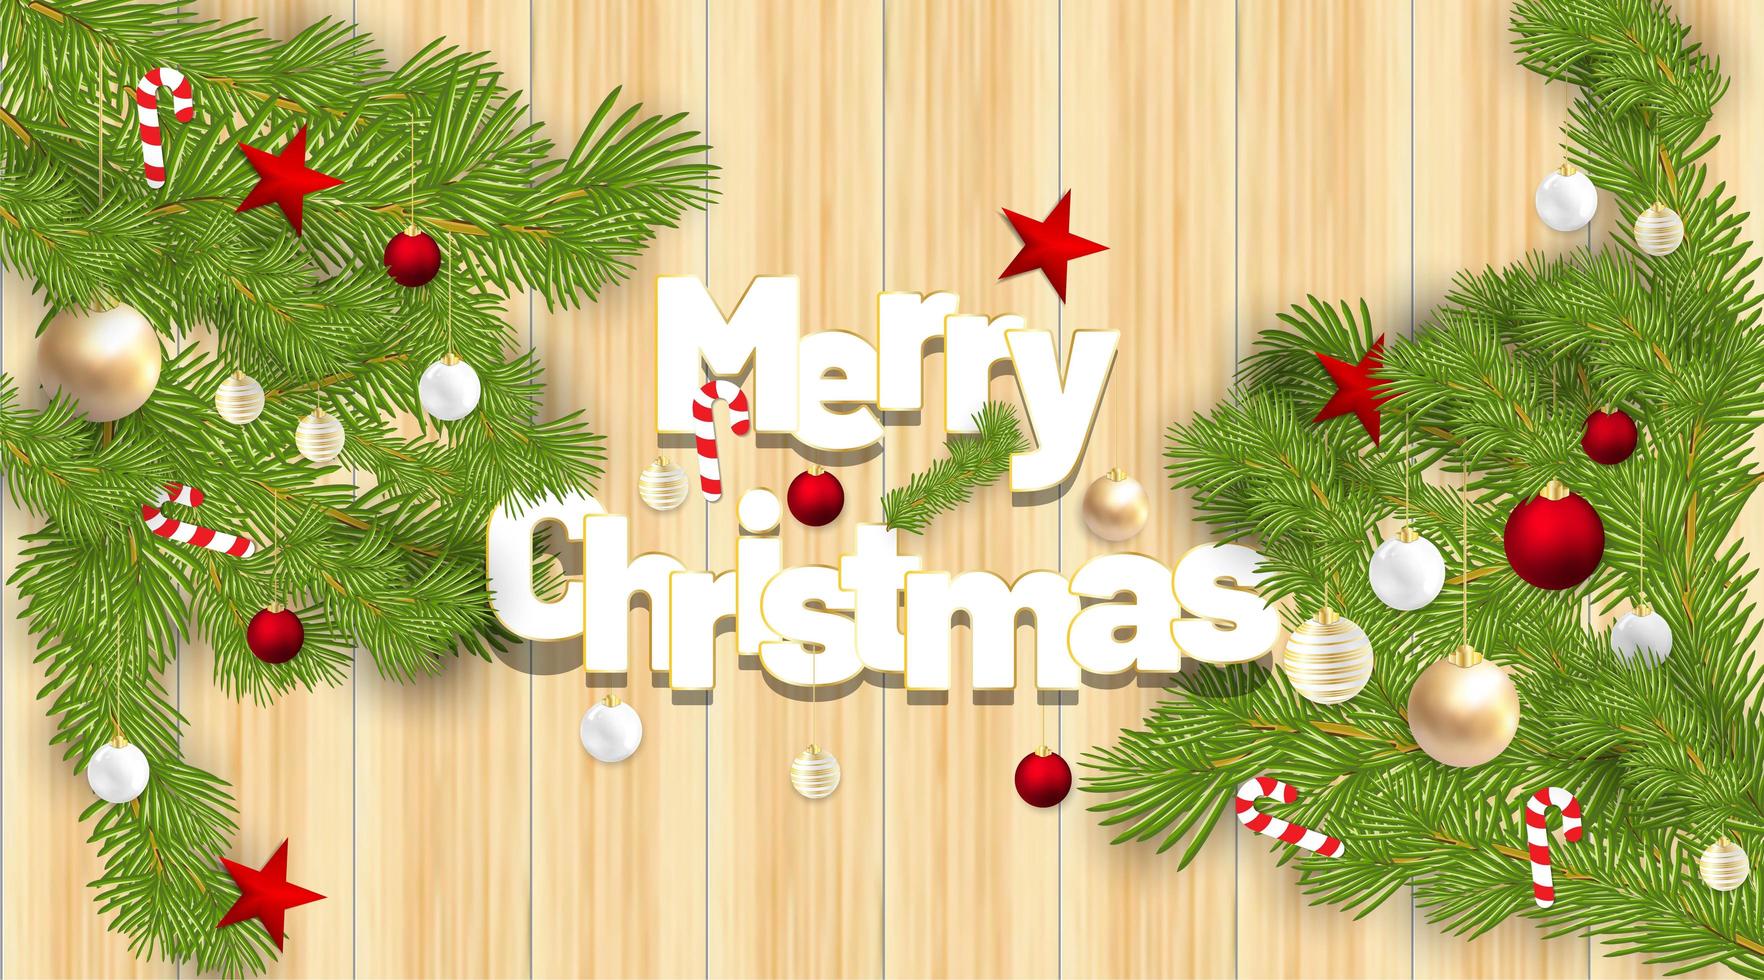 Frohe Weihnachten Vektor Ornamente mit roten Kugeln, Süßigkeiten, Sternen und Blättern. Hintergrund Holz Textur. Vektorillustration